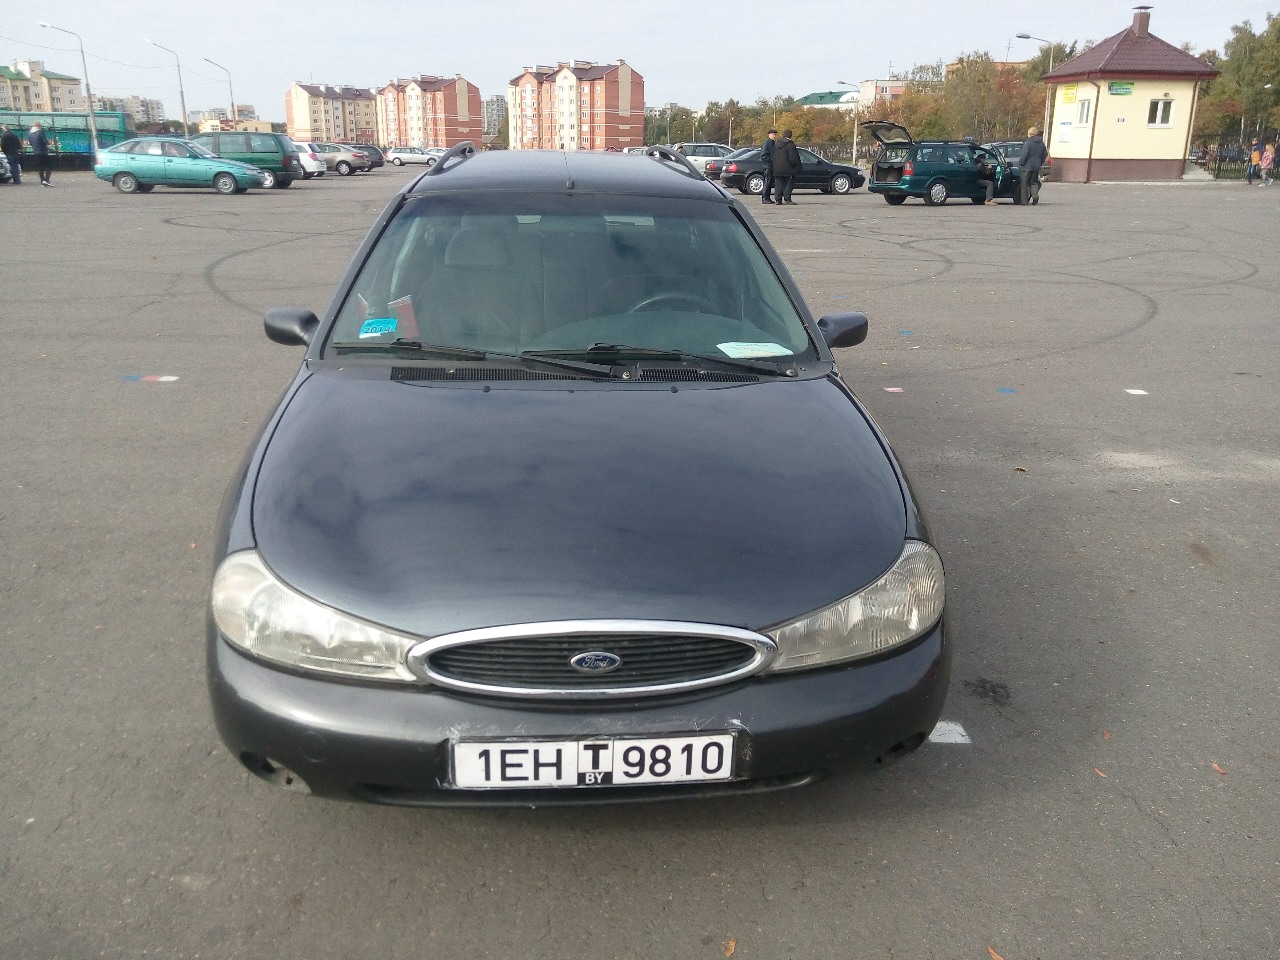 Продажа авто в Москве, Московской области: частные ...